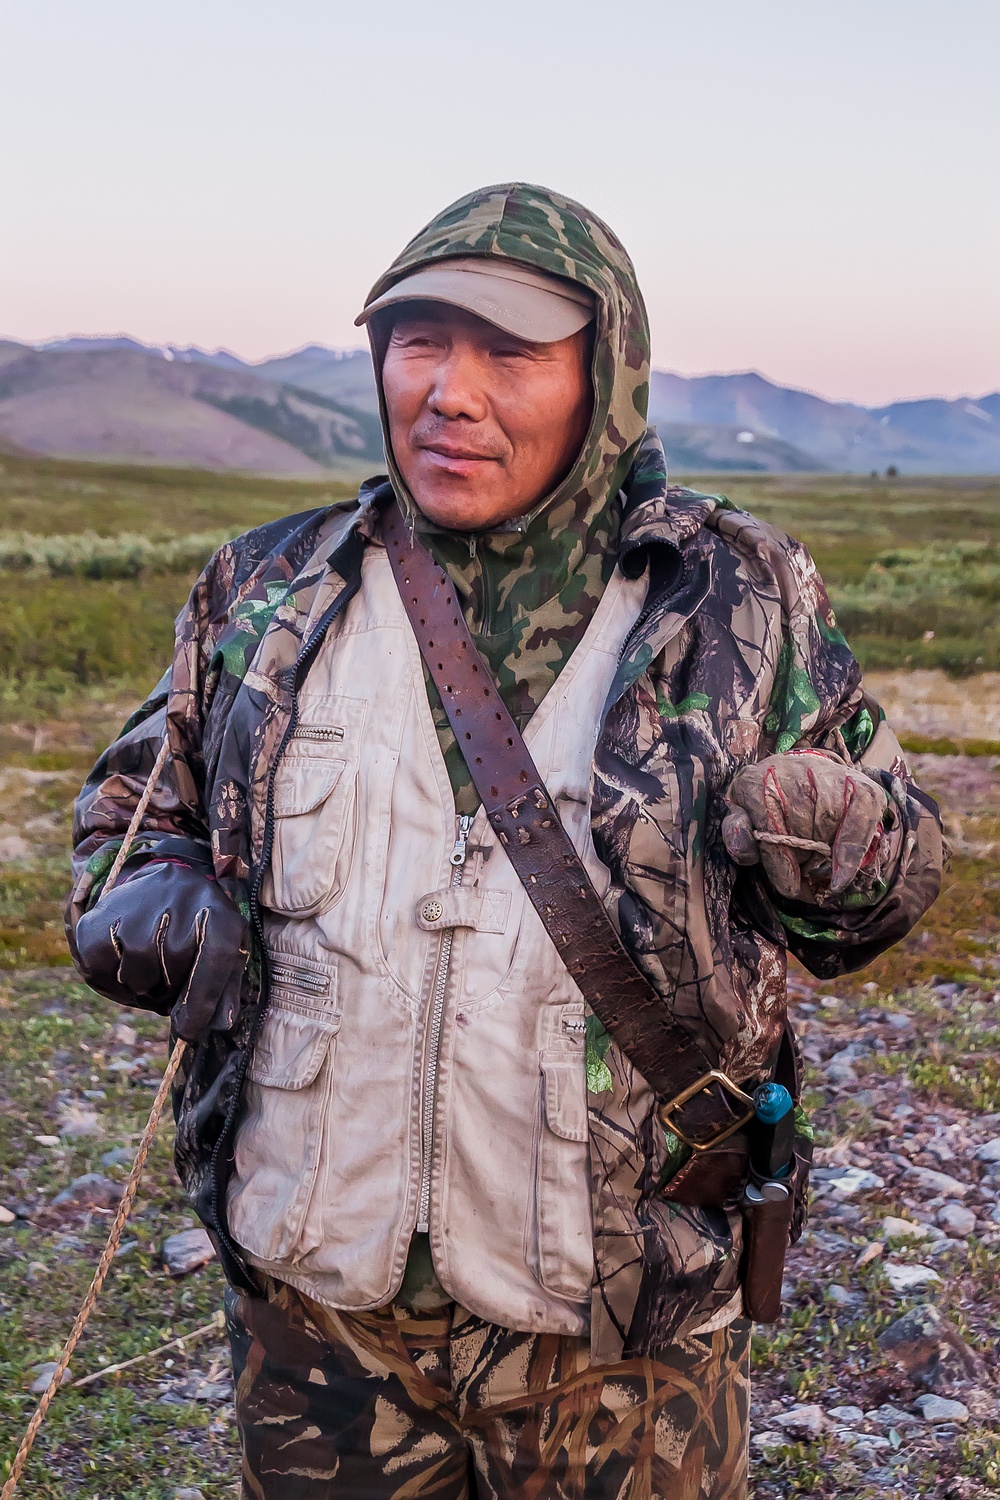 Le cerf permet la survie de nombreux petits groupes indigènes peuplant le nord de la Russie. Les fermes de rennes constituent souvent une grande partie de l’économie des zones rurales. C’est l’histoire de ces gardiens de troupeaux de rennes filmés dans la vallée de la rivière Burgakhchan, dans le District de Bilibinsky, Tchoukotka, en 2011.